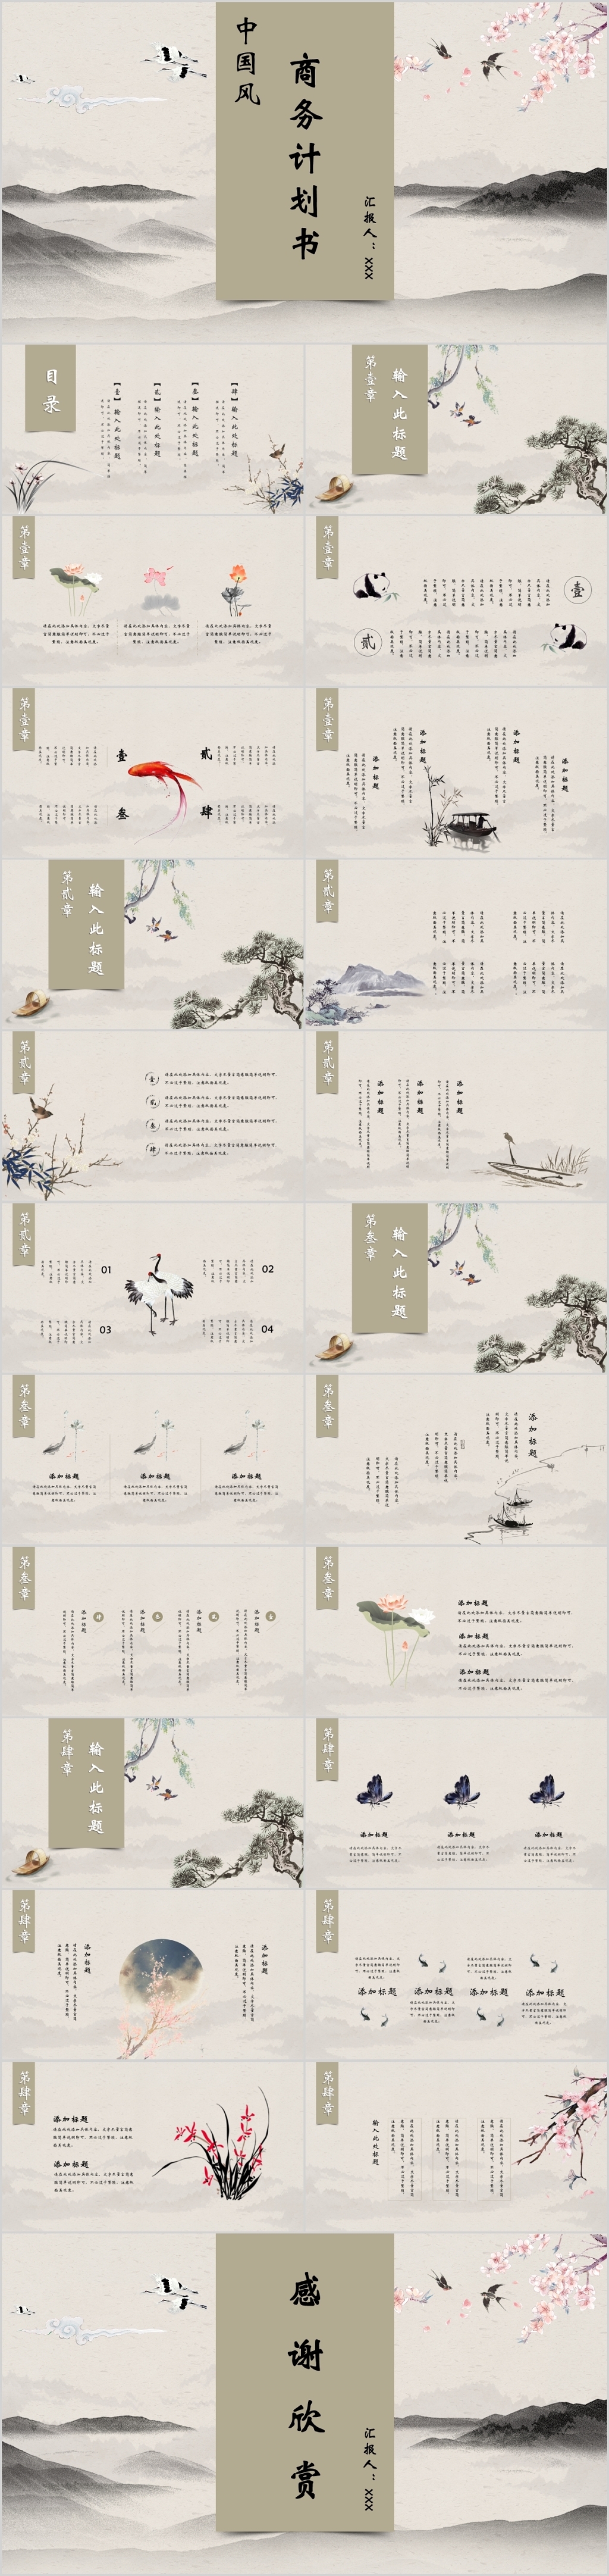 中国风古风淡雅水墨风格商务通用计划书PPT模板